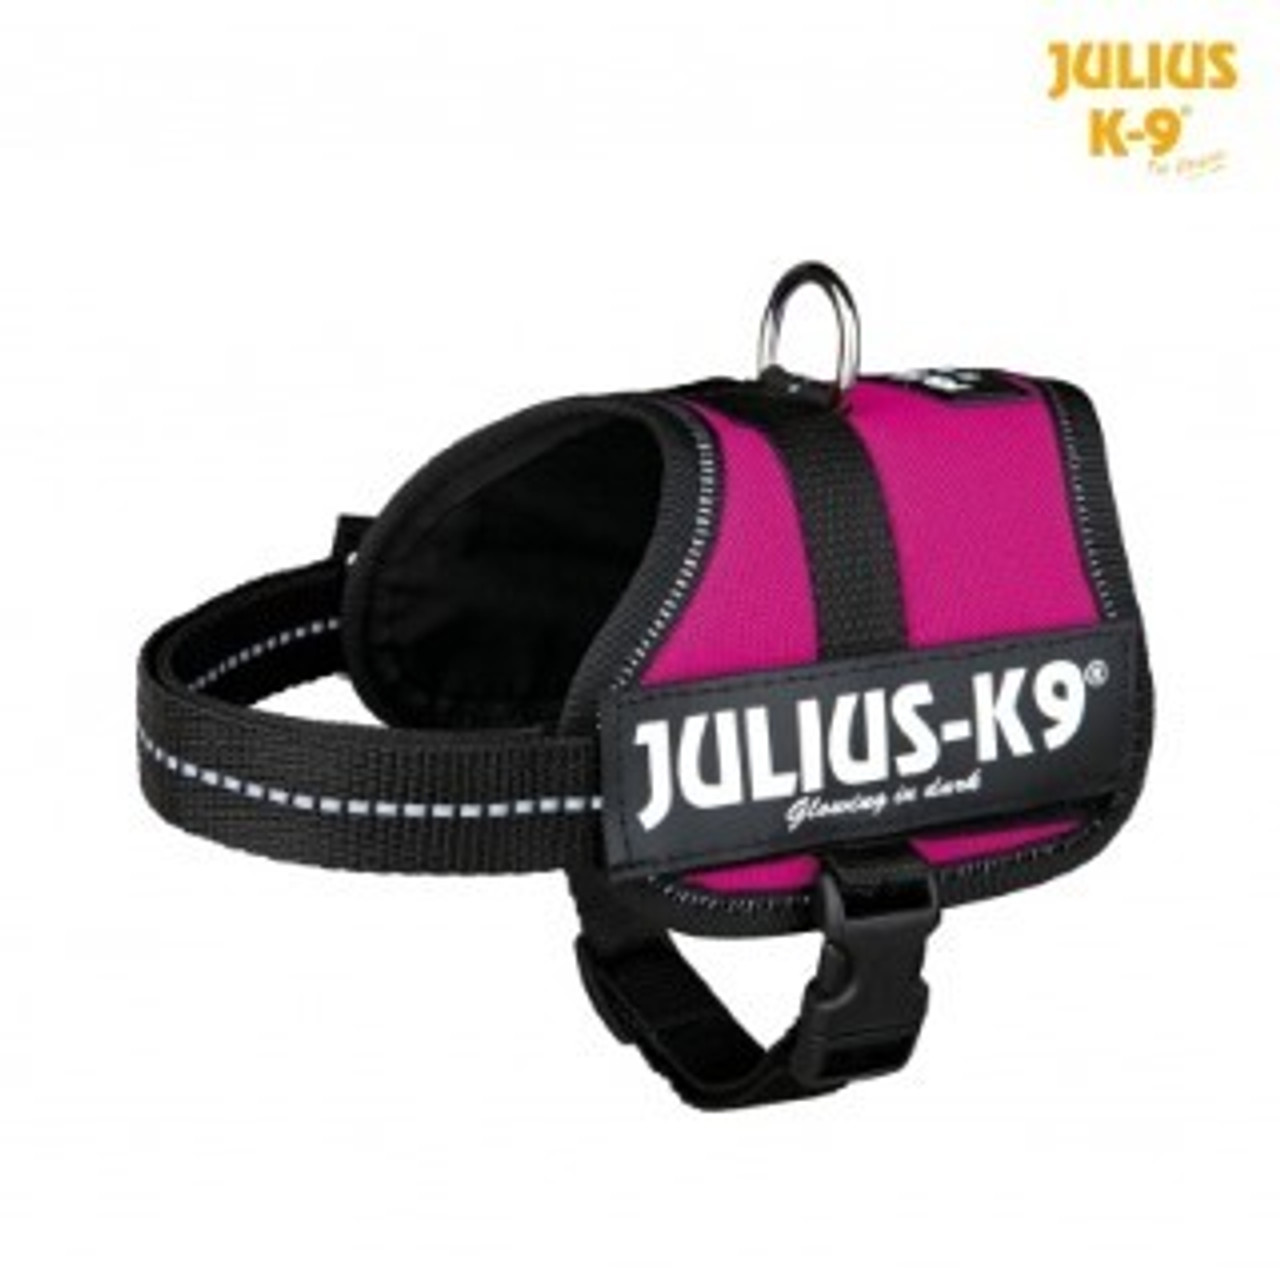 julius k9 power harness mini